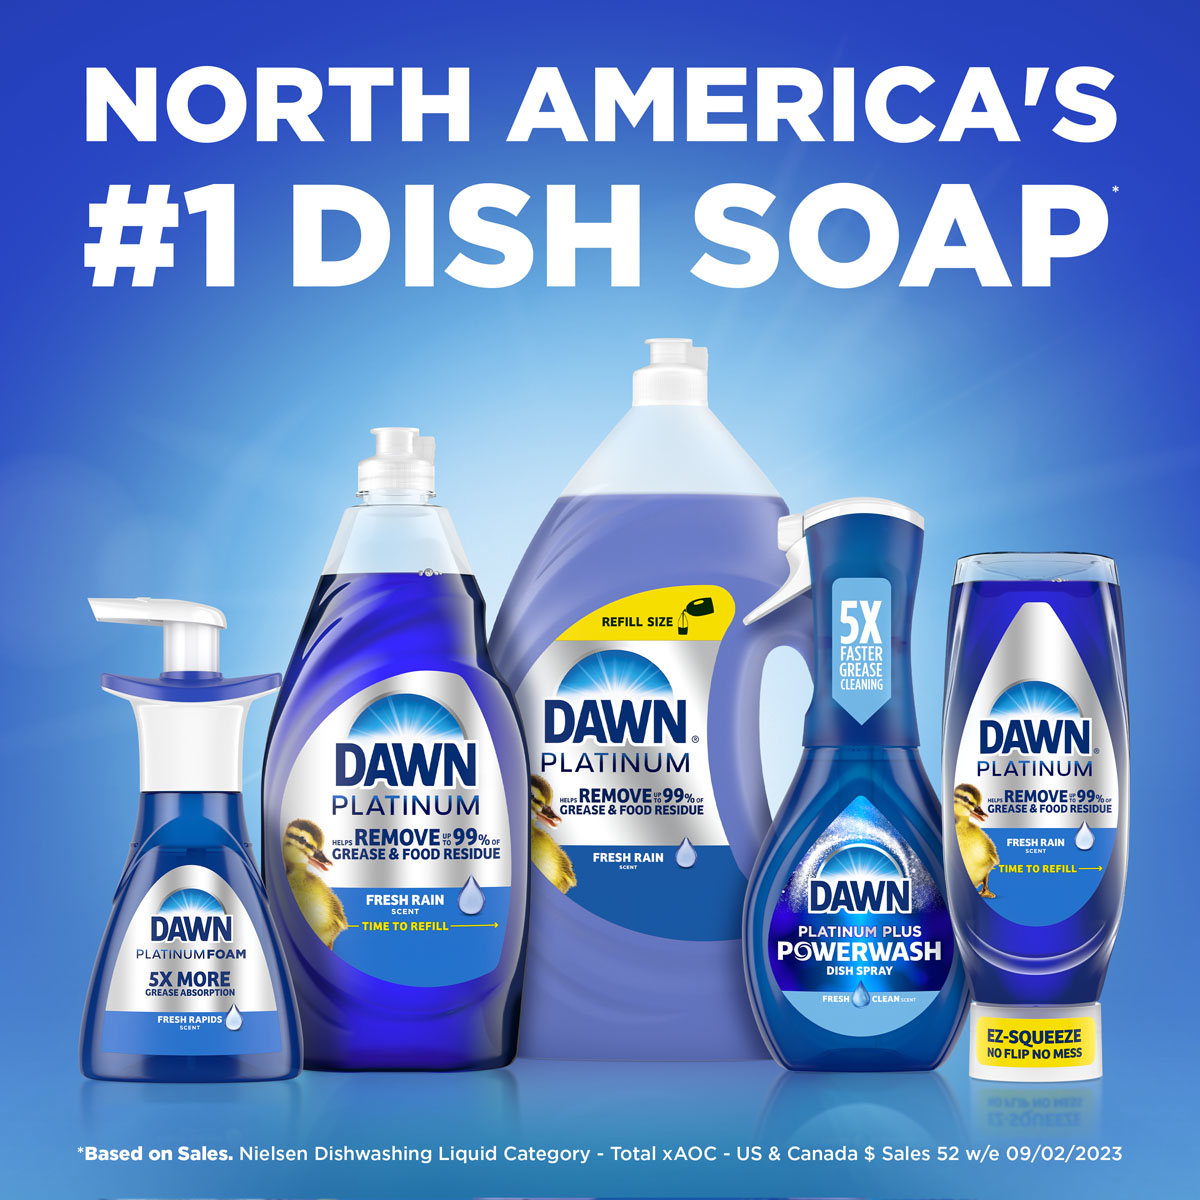 North America's #1 Dish Soap